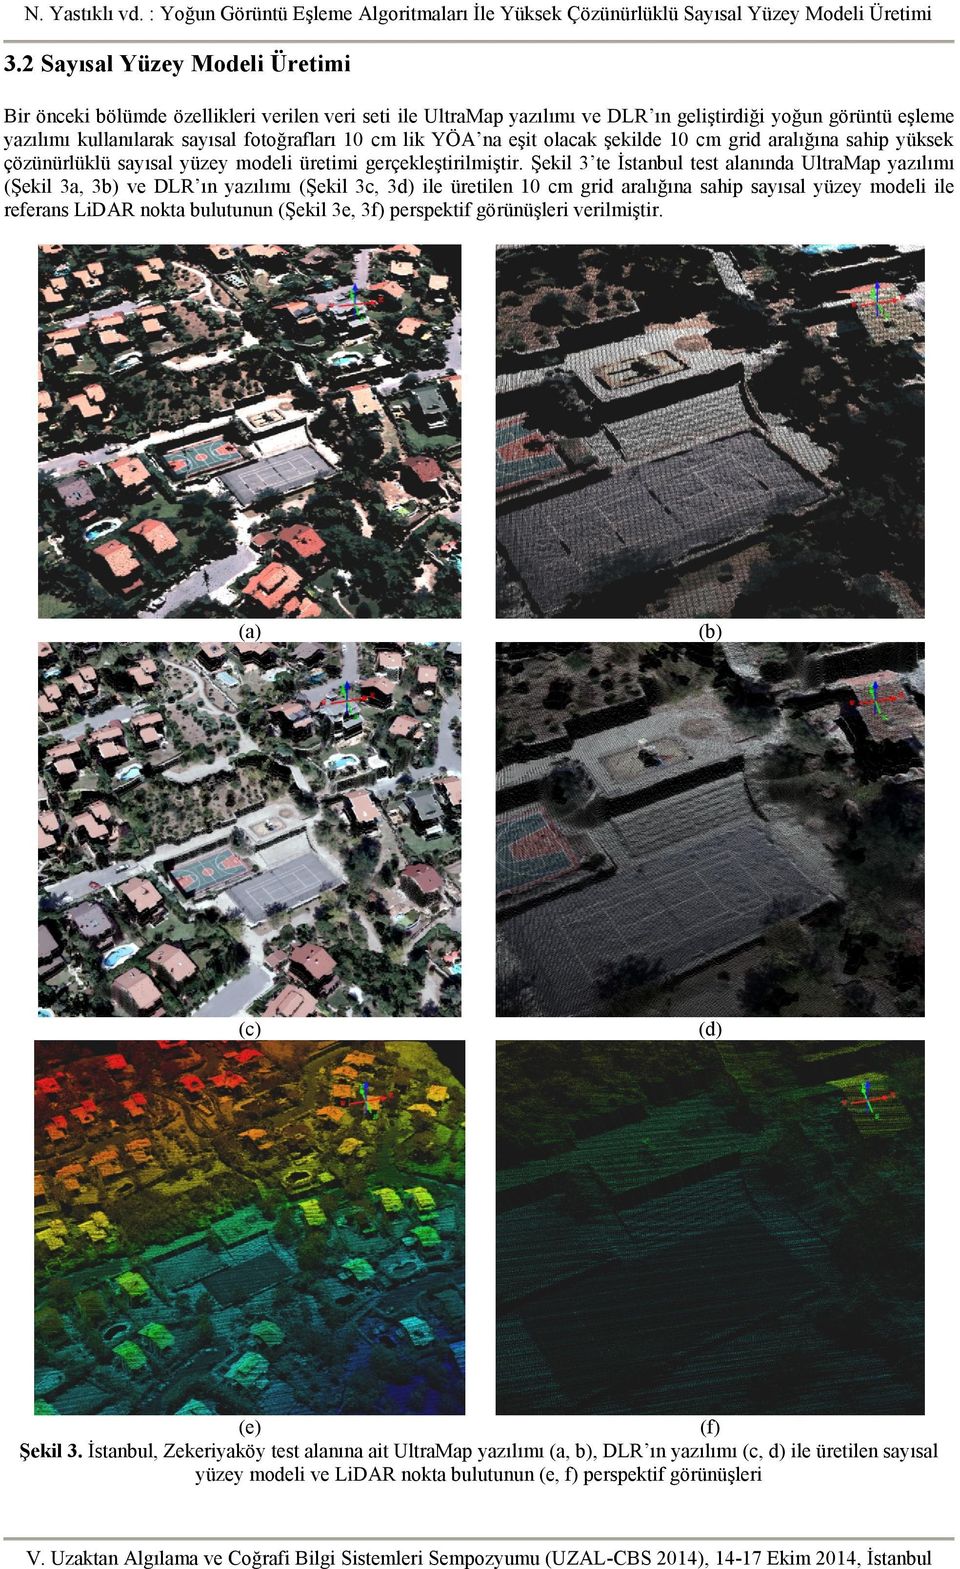 Şekil 3 te İstanbul test alanında UltraMap yazılımı (Şekil 3a, 3b) ve DLR ın yazılımı (Şekil 3c, 3d) ile üretilen 10 cm grid aralığına sahip sayısal yüzey modeli ile referans LiDAR nokta